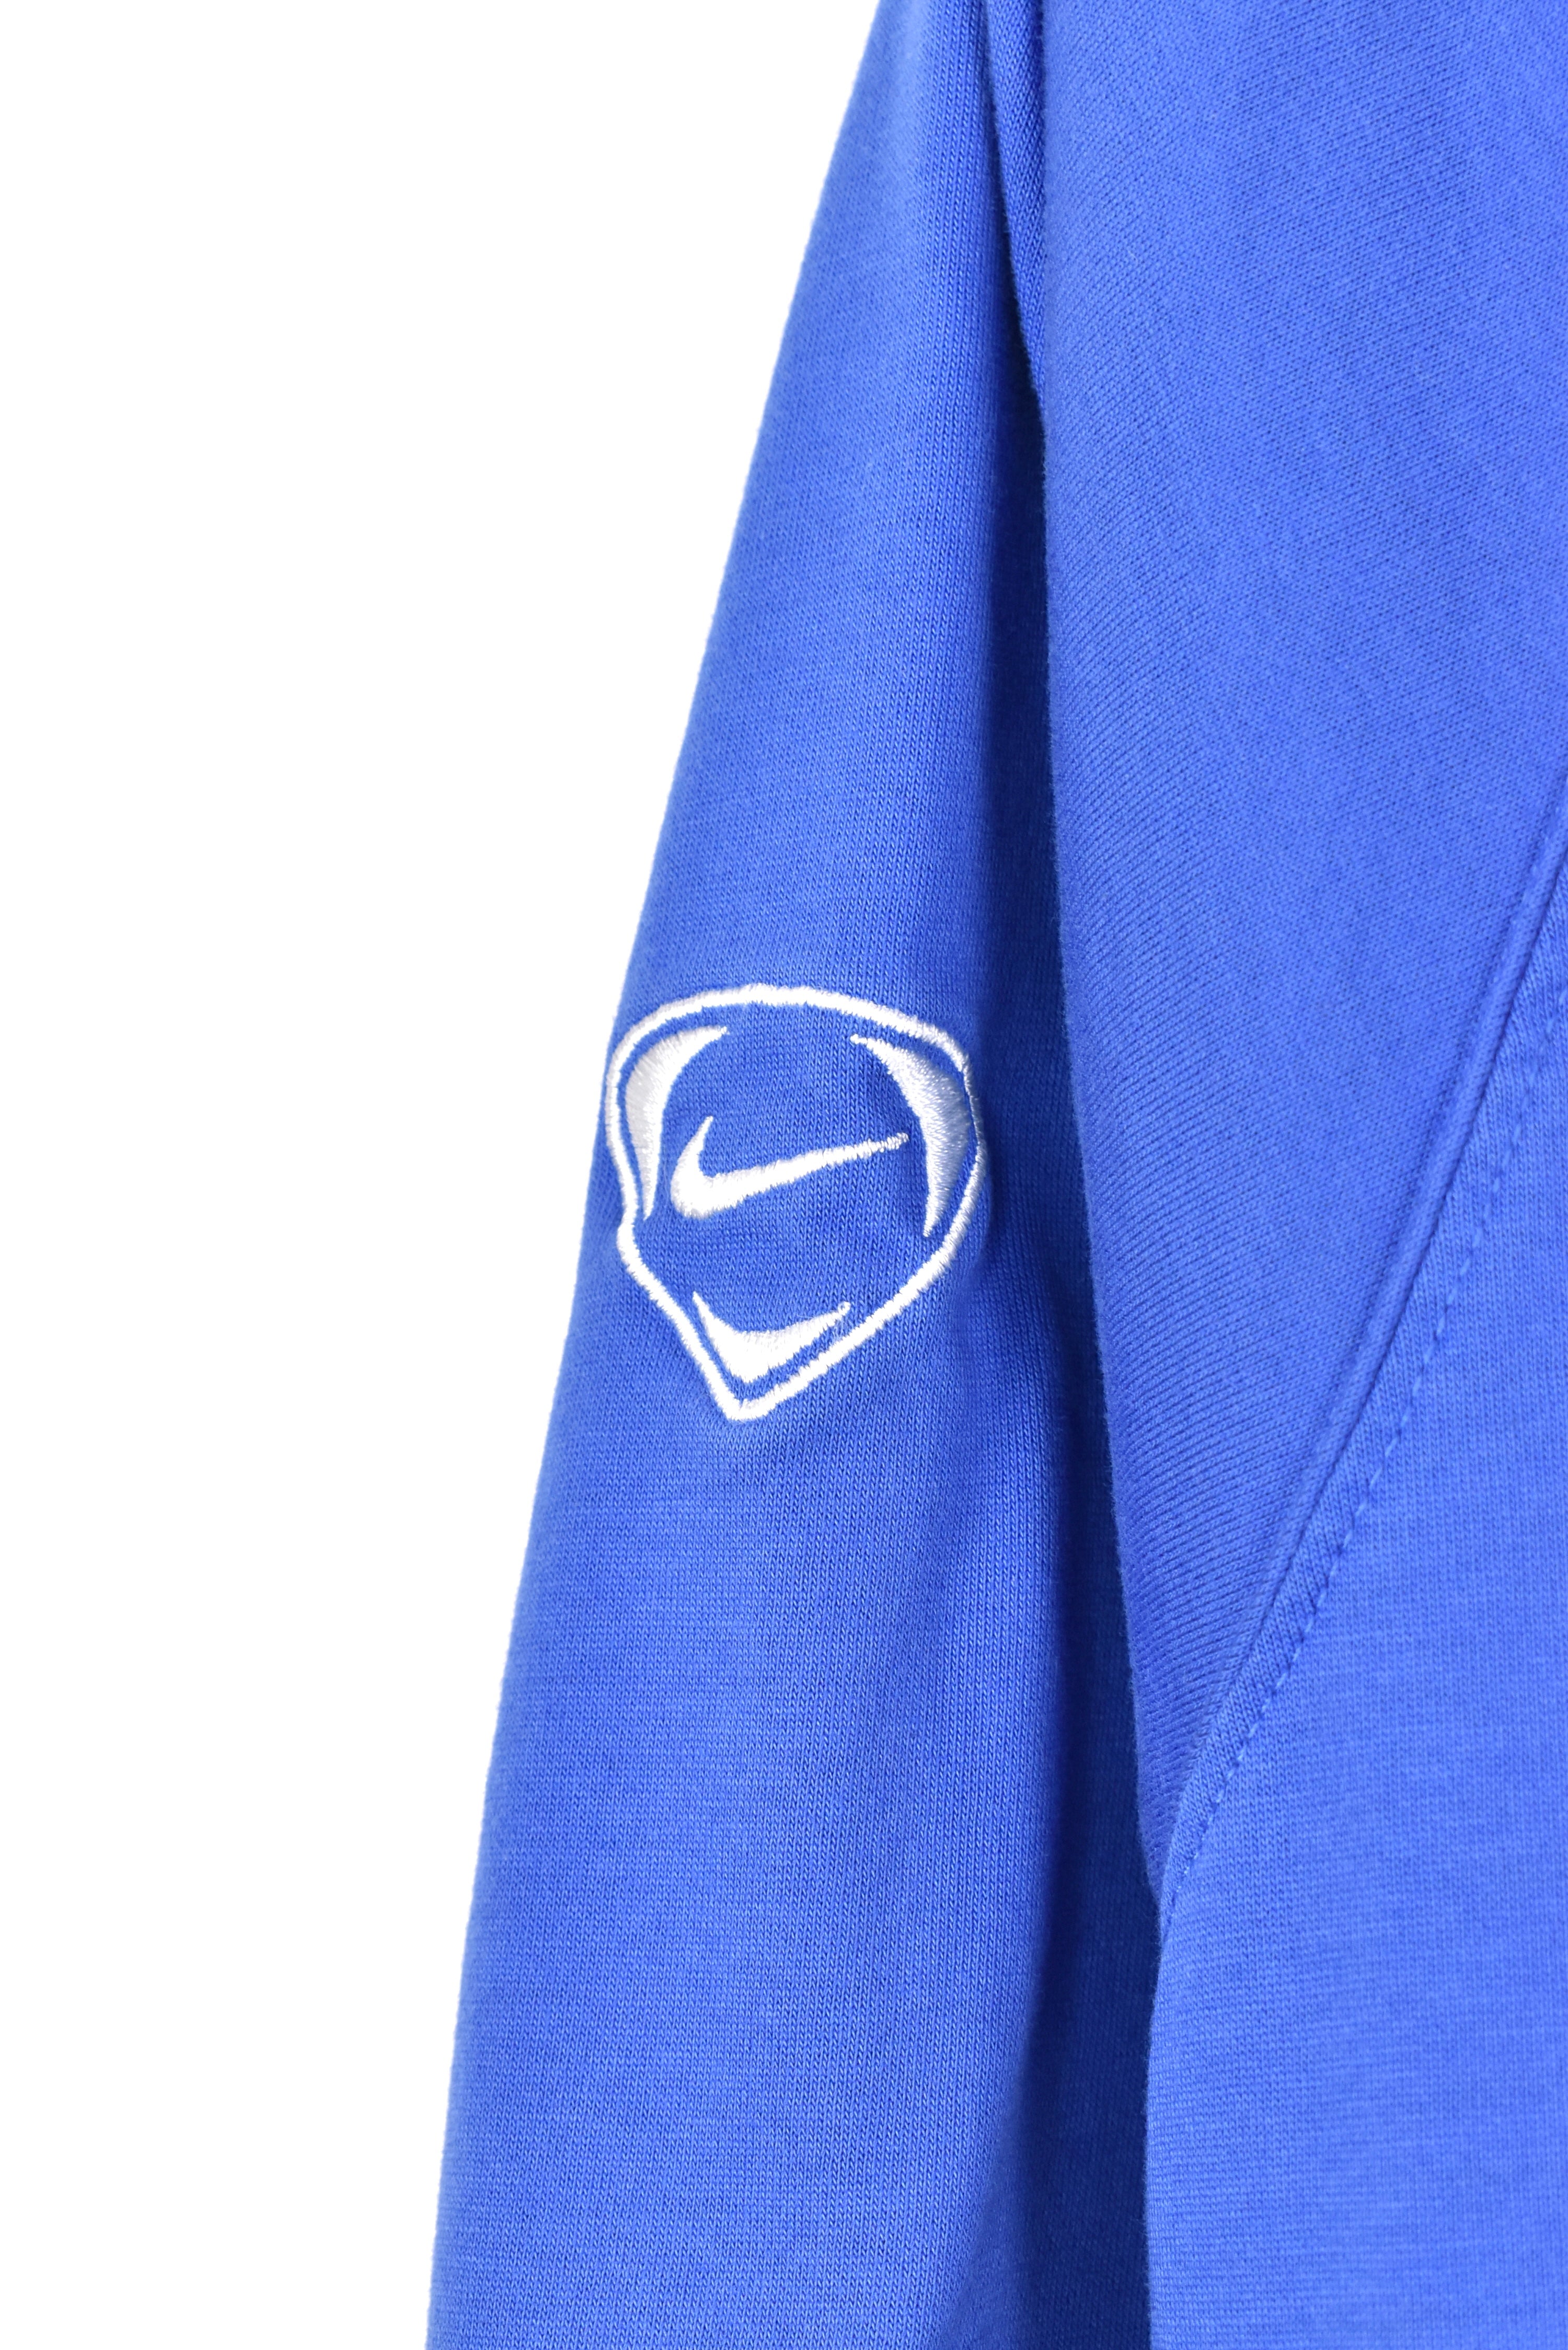 Vintage Nike polo shirt, blue soccer embroidered tee - AU M NIKE